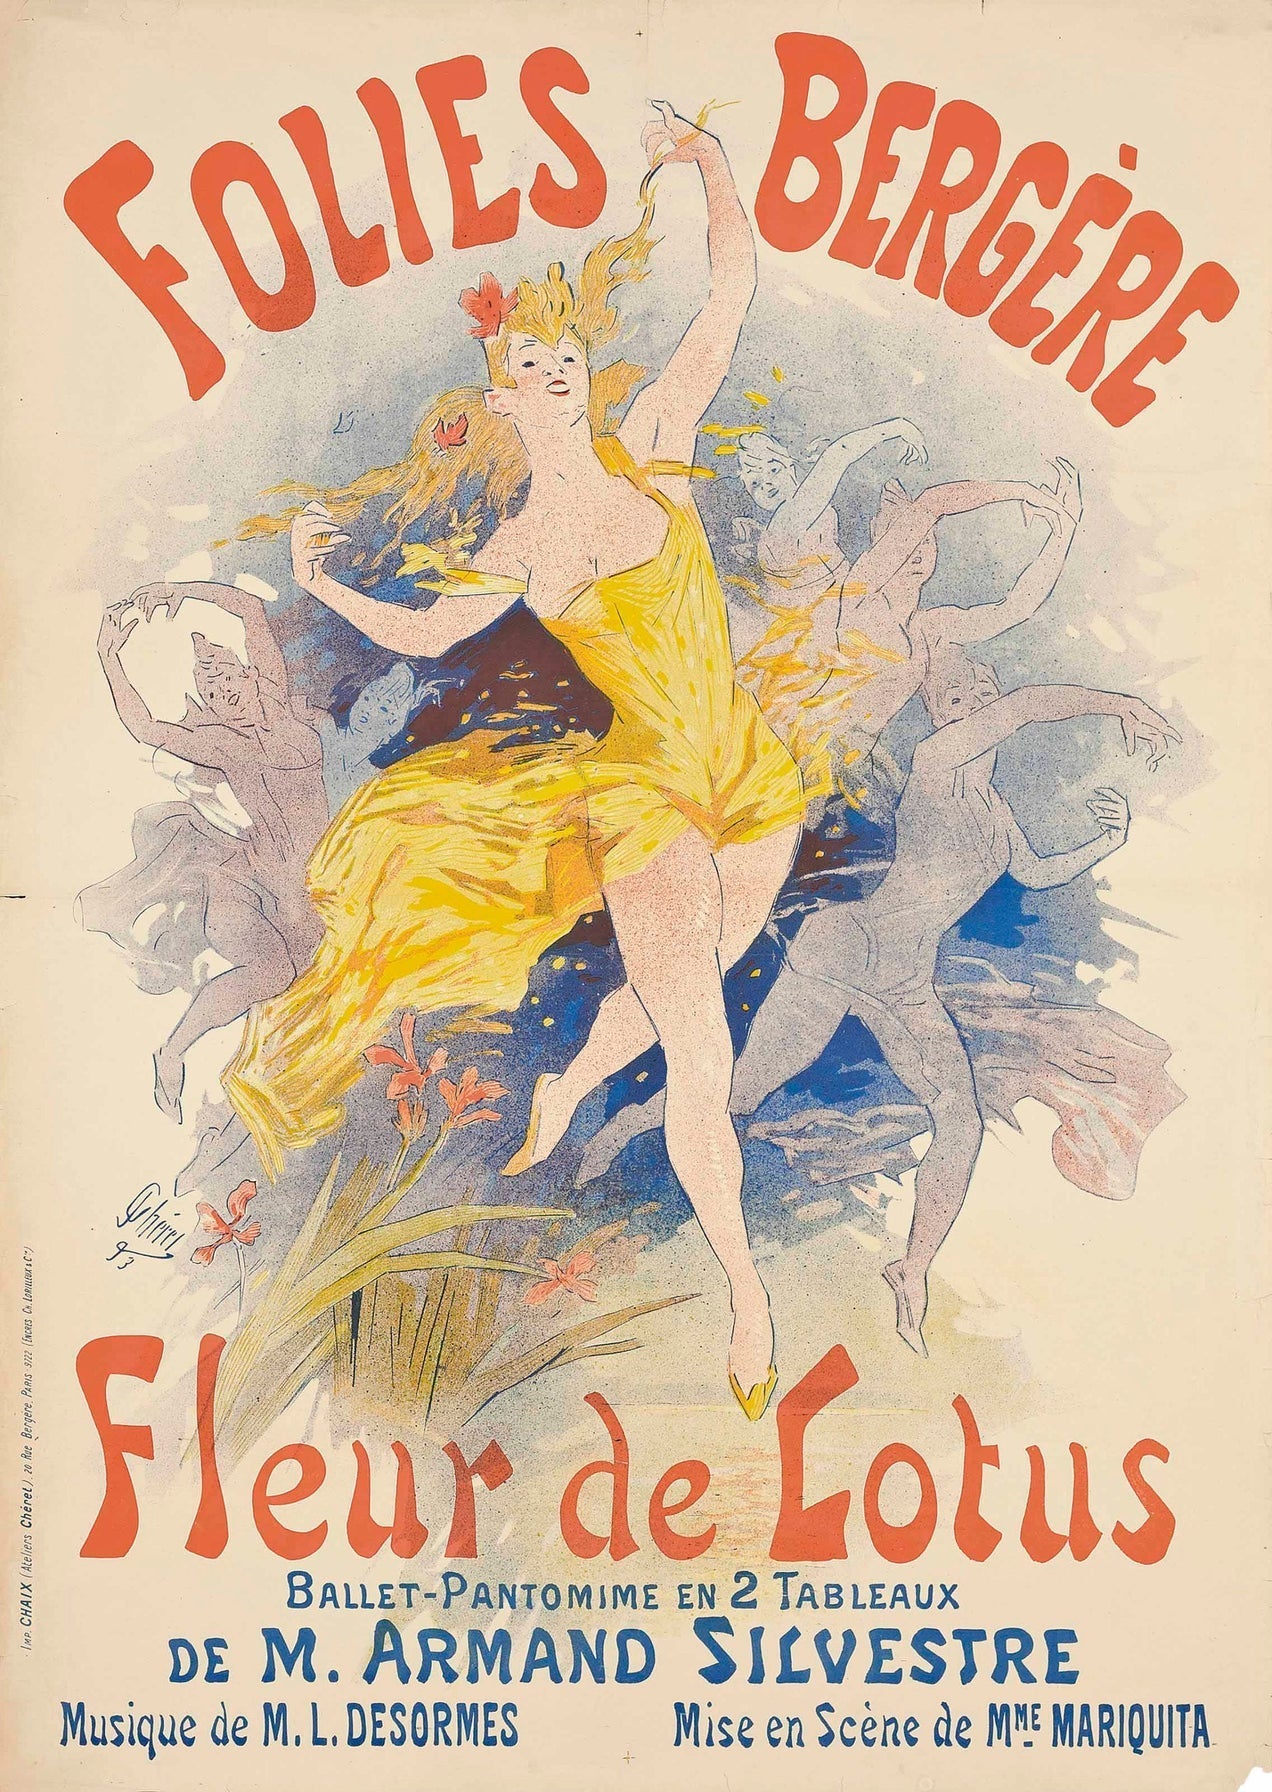 Fleur de Lotus Ballet poster art print, Paris (1890s) | Jules Cheret  The Trumpet Shop   